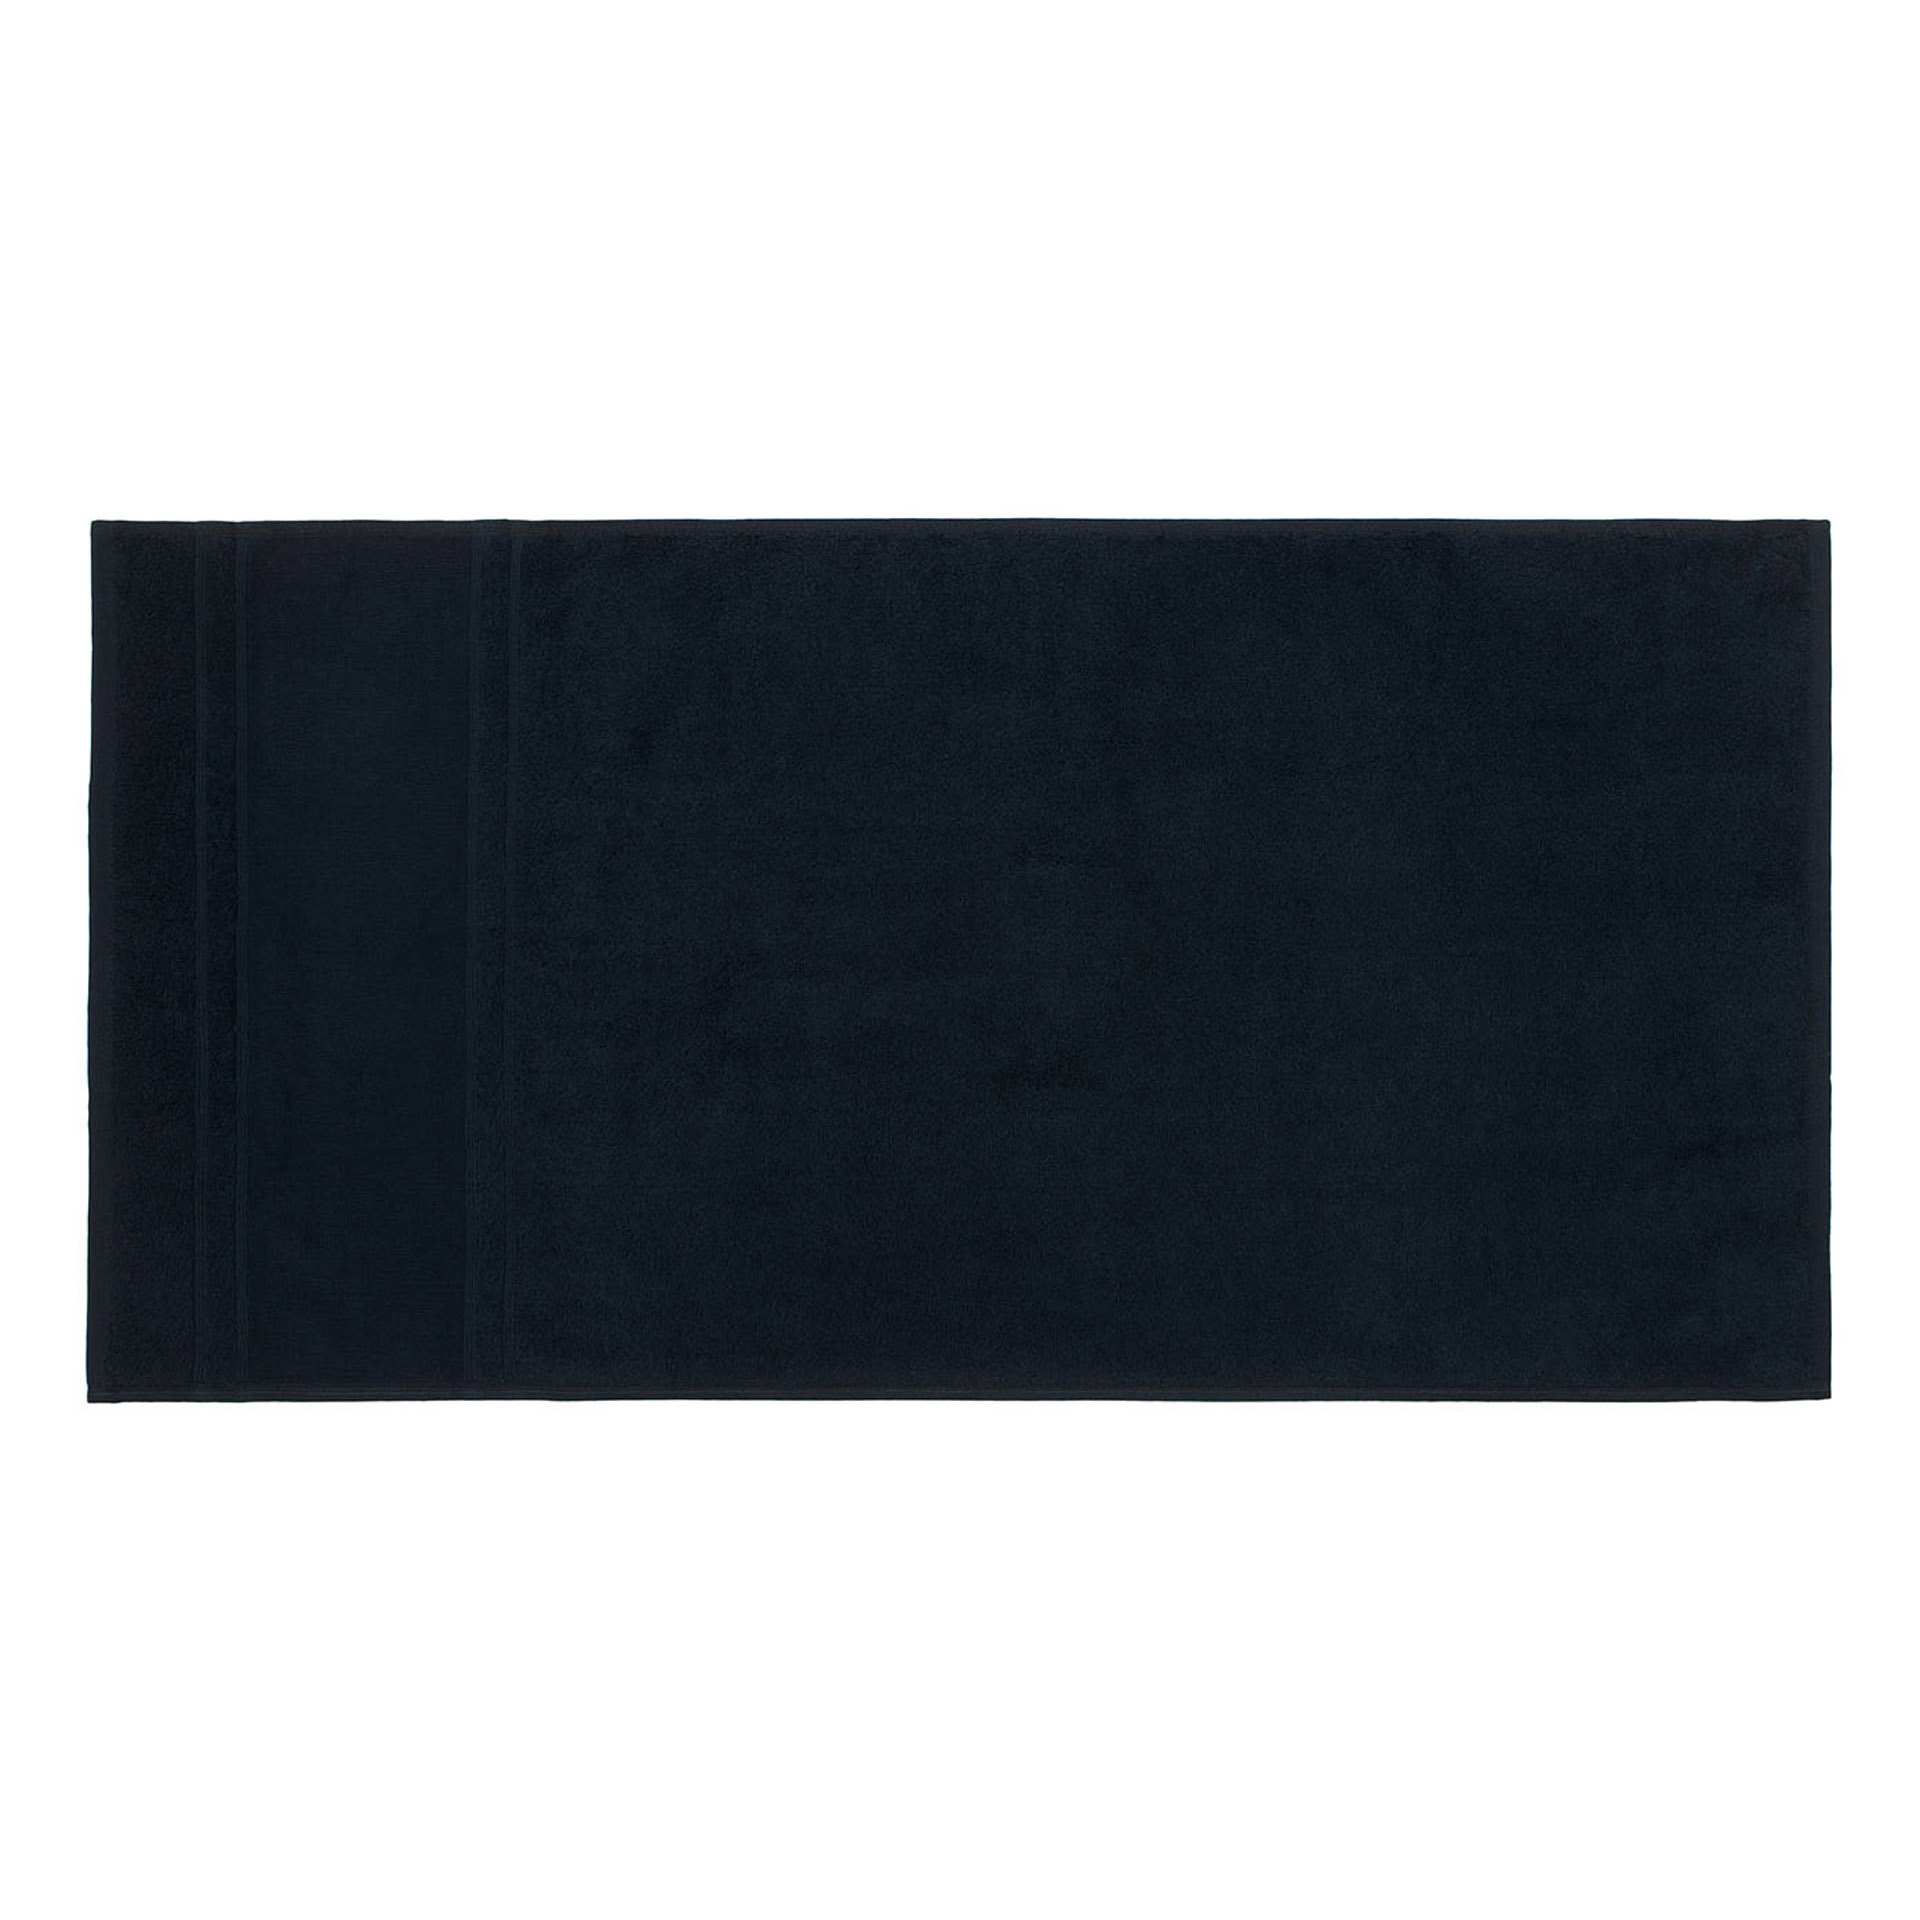 Bade-/ Saunatuch - Serie PORTO - schwarz - Abm. 100 x 180 cm - Baumwolle - 200001-9-99-D